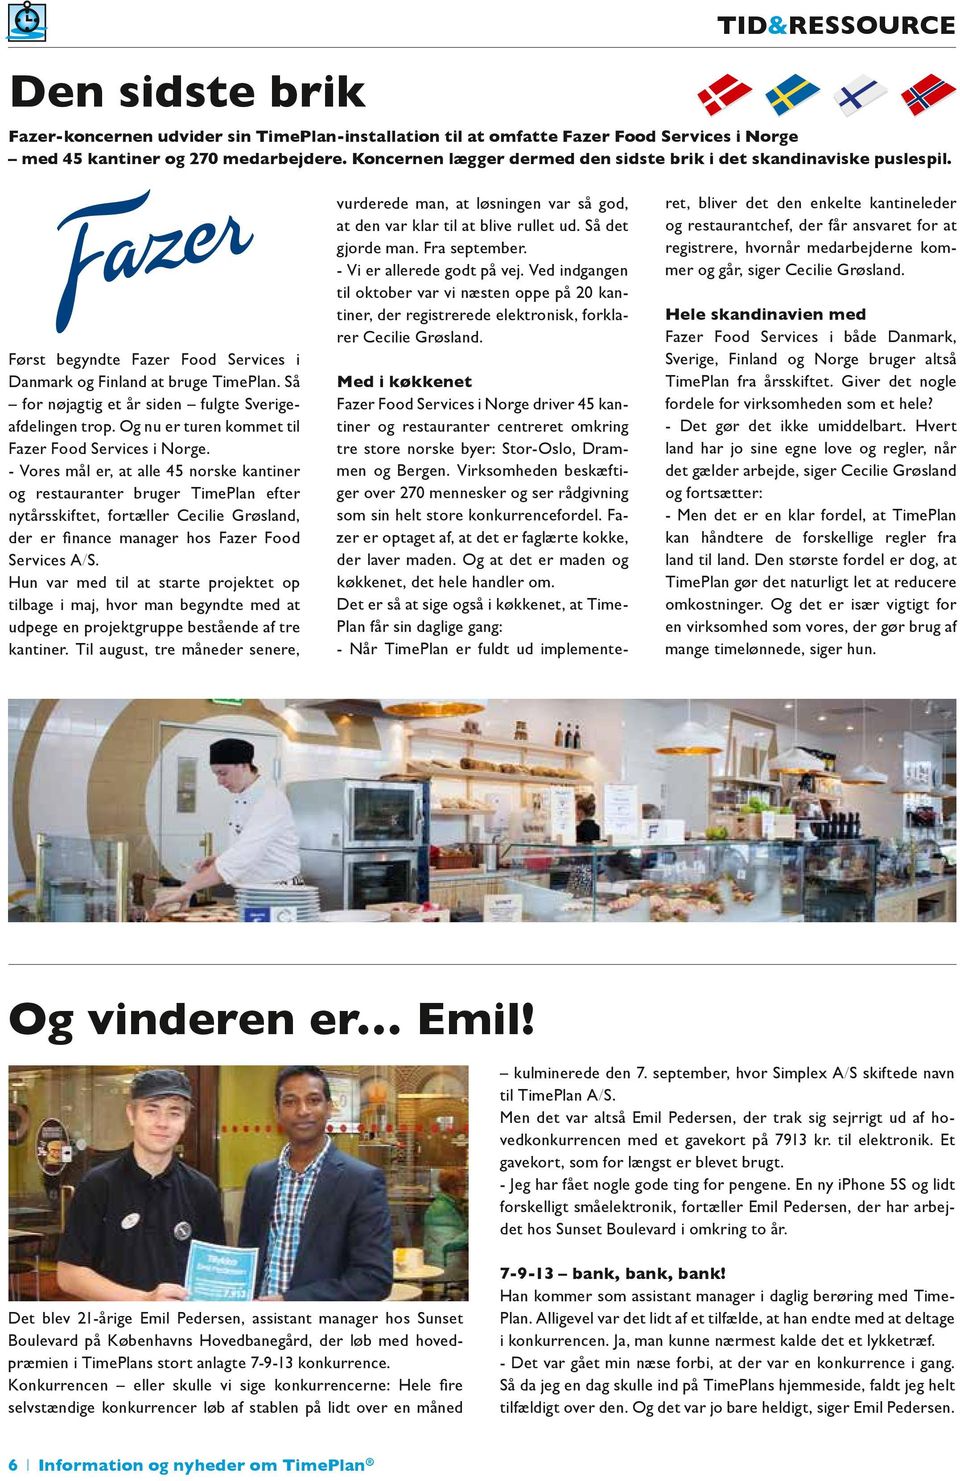 Så for nøjagtig et år siden fulgte Sverigeafdelingen trop. Og nu er turen kommet til Fazer Food Services i Norge.